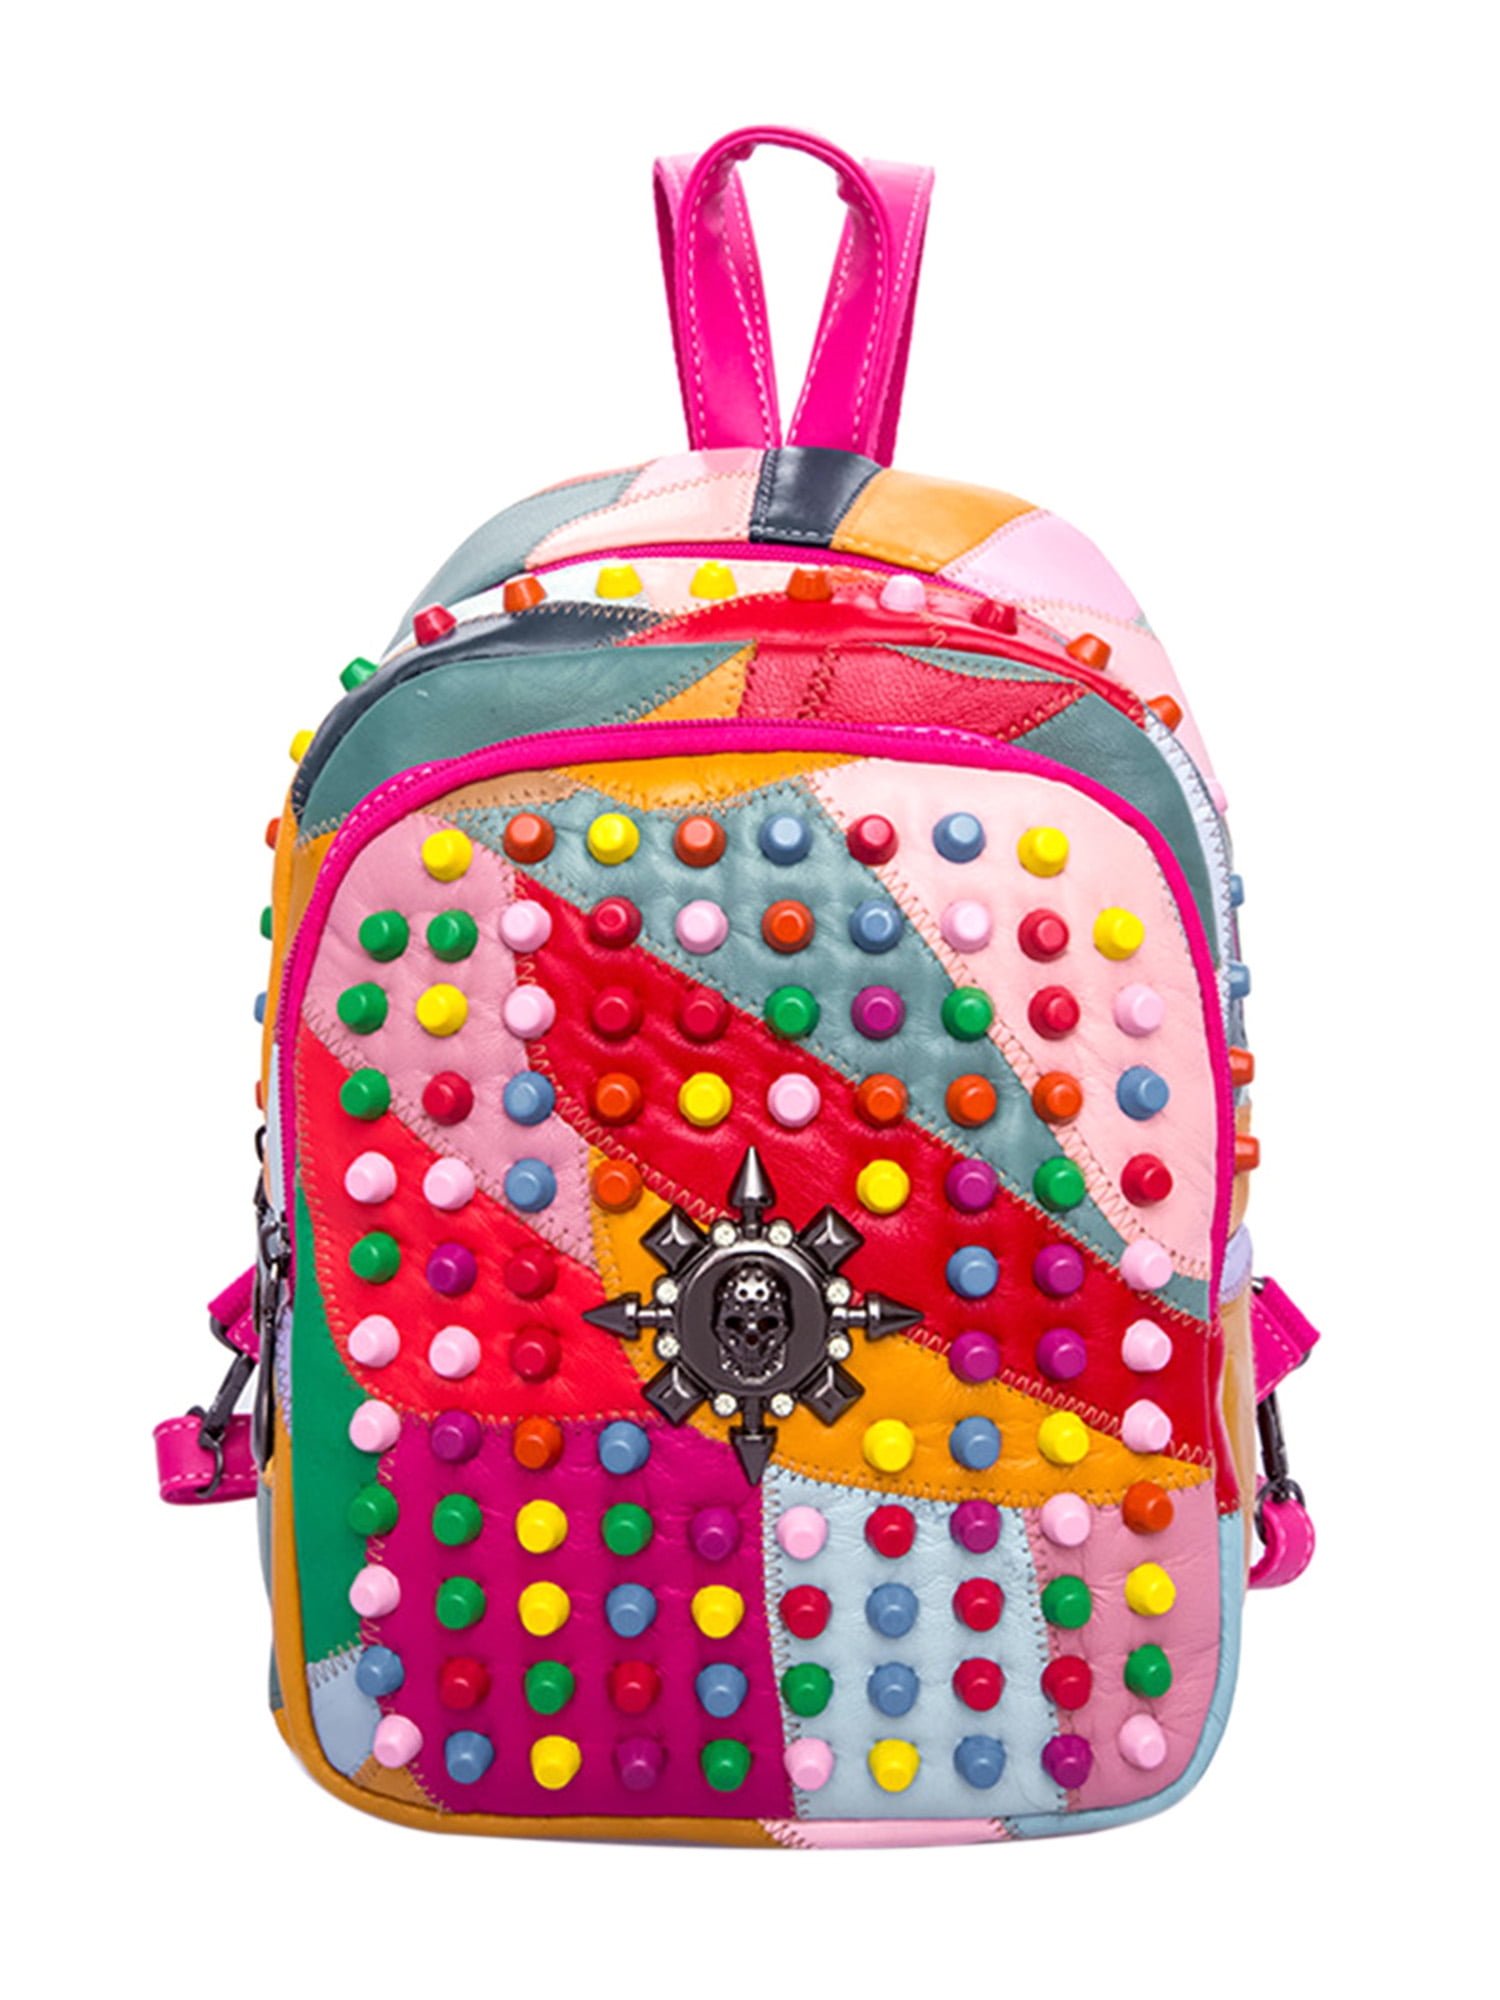 Ladies Women PU Leather Backpack Rivet Studded Cute Satchel School Bags